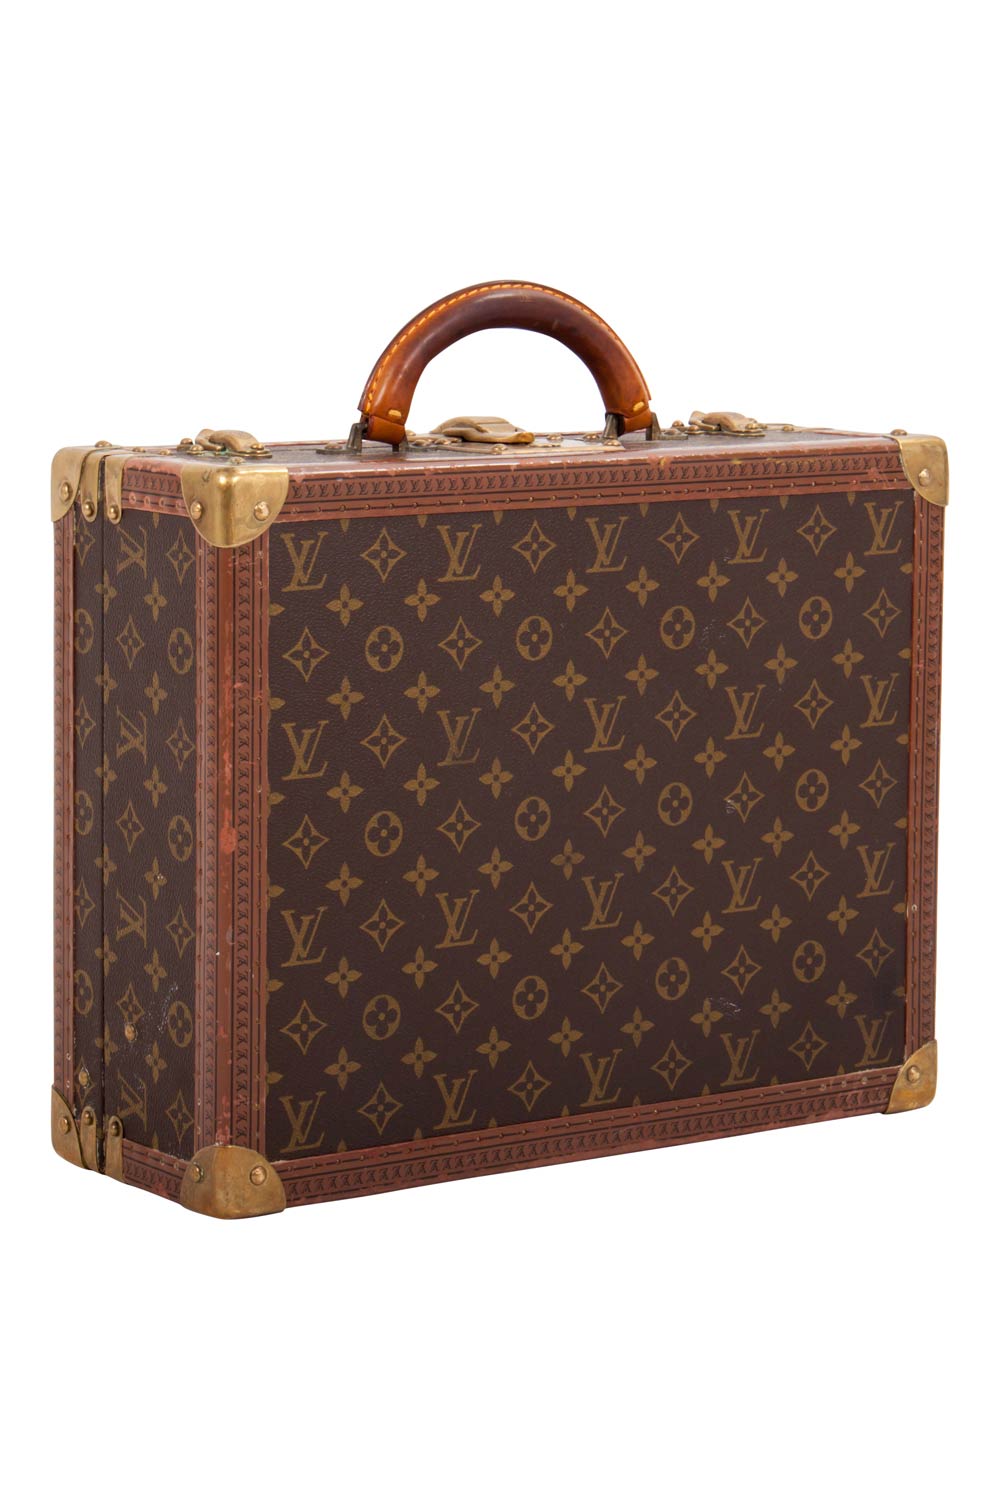 Louis Vuitton Monogram Canvas Cotteville 40 Carry On Luggage Trunk Louis Vuitton | TLC